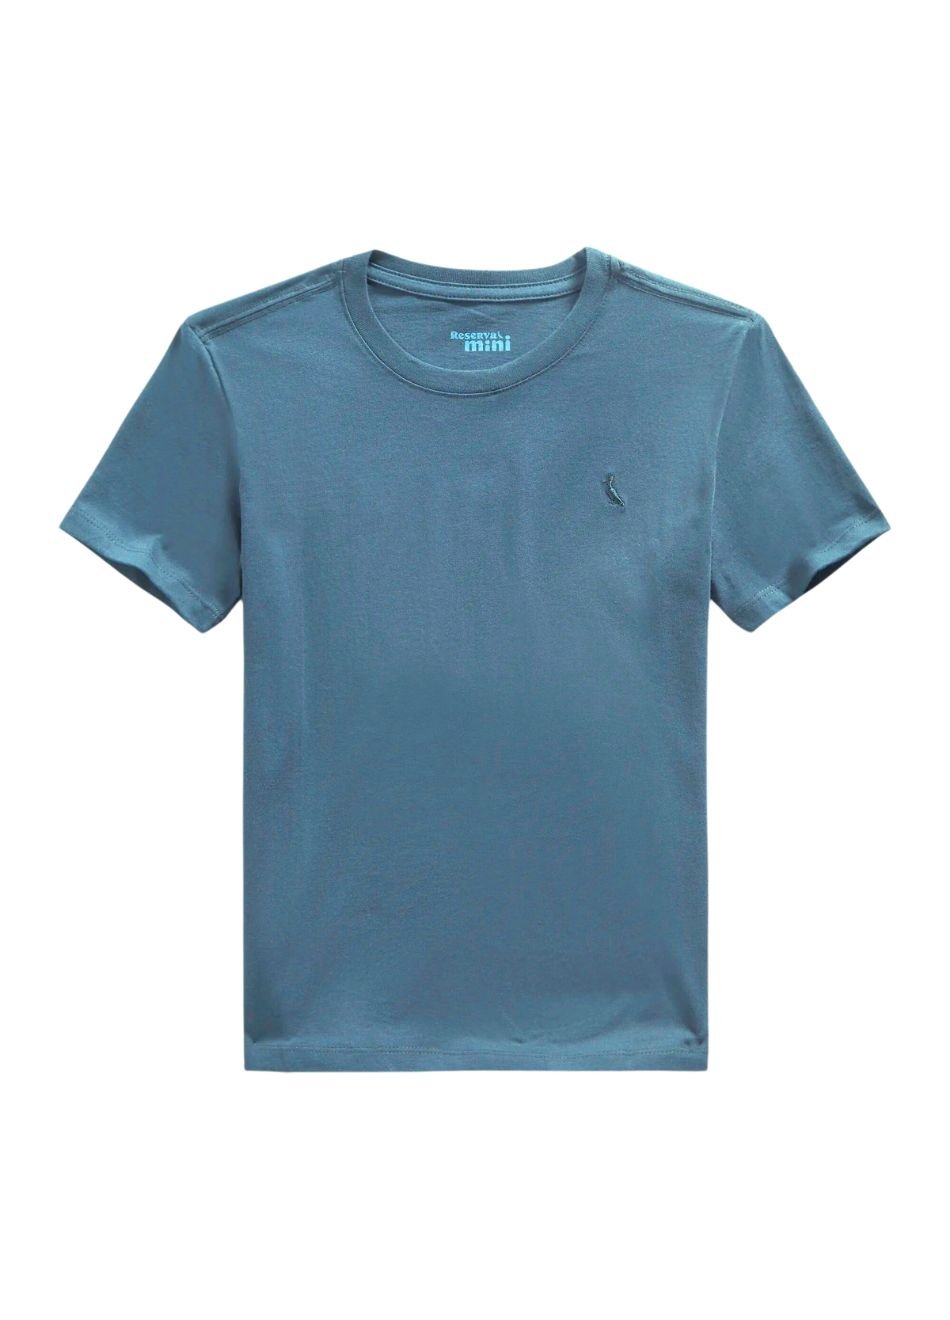 Camiseta Reserva Mini Careca Azul Jeans